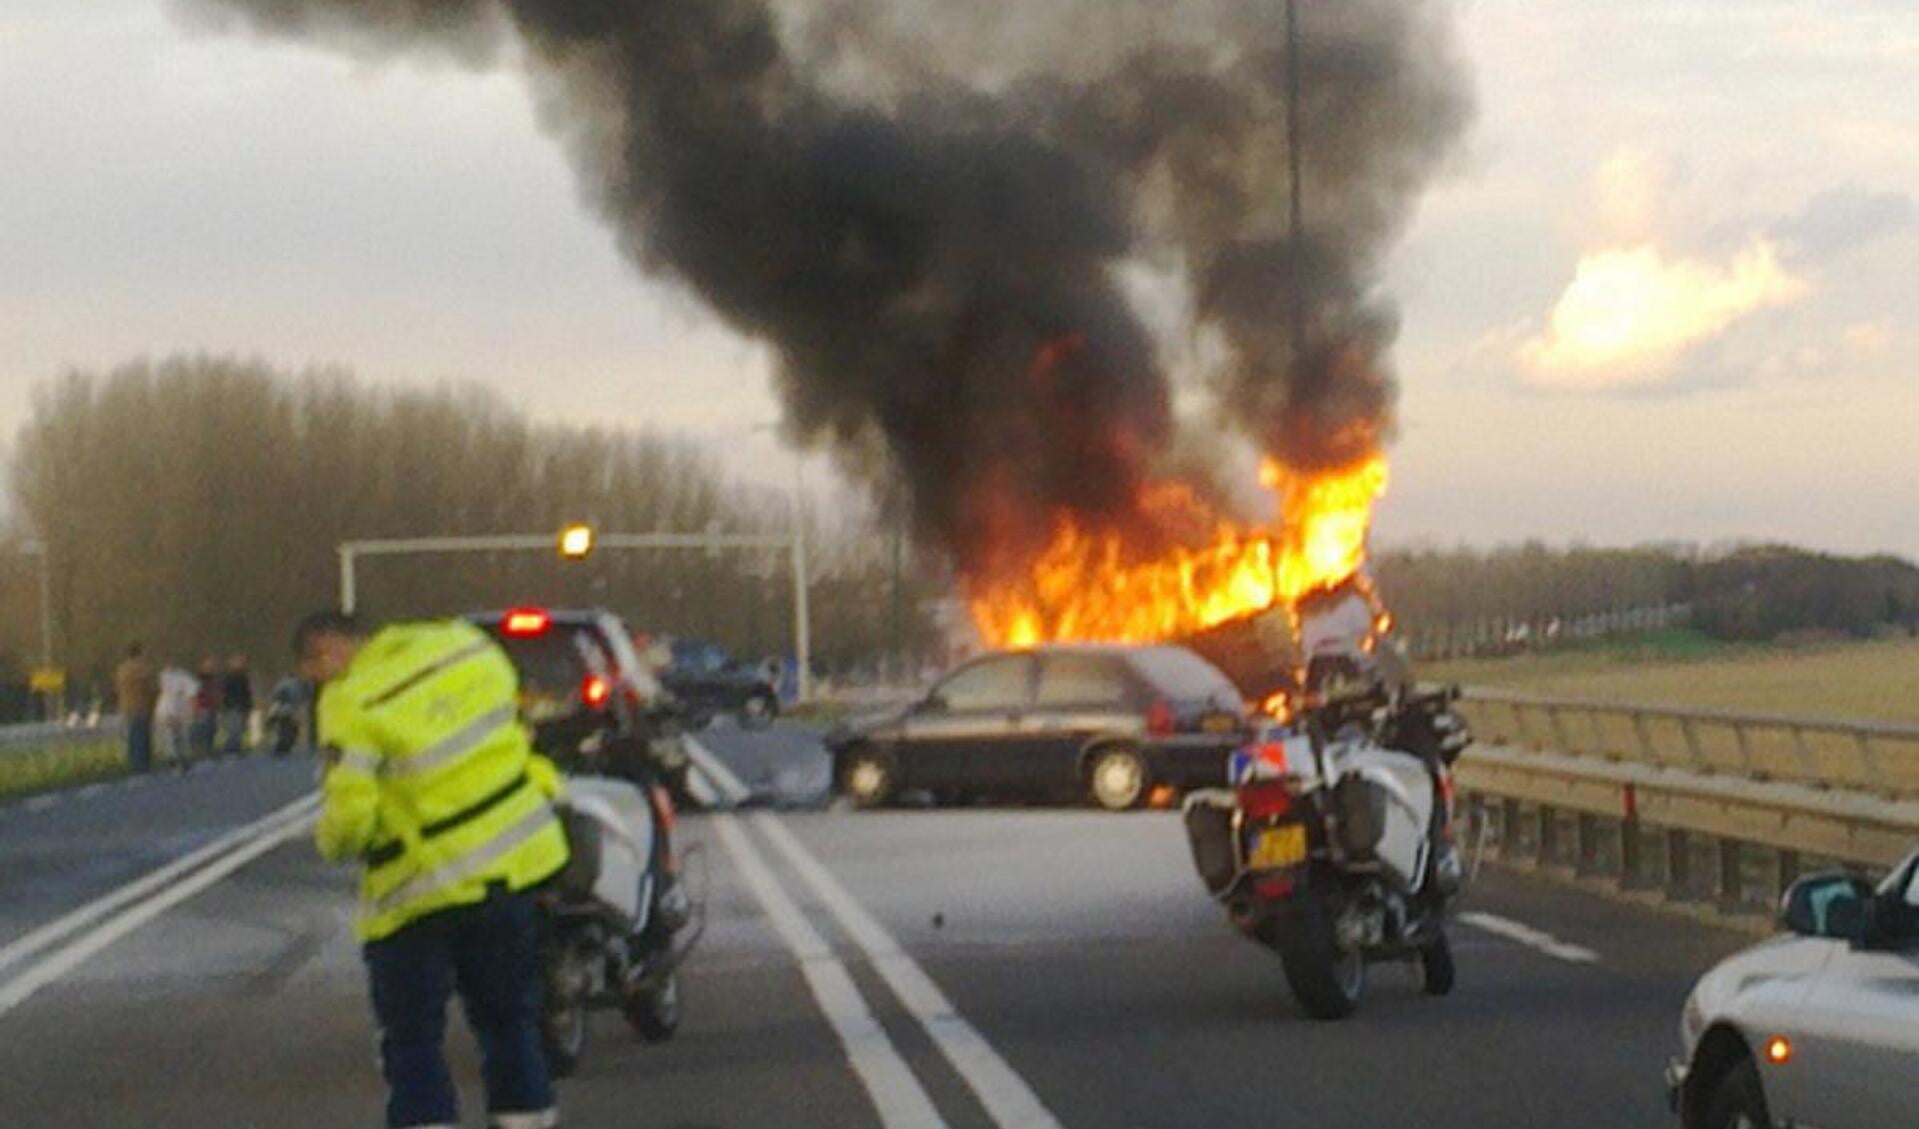 http://www.bredavandaag.nl/nieuws/2010-11-15/gewonden-bij-ongeval-met-drie-autos